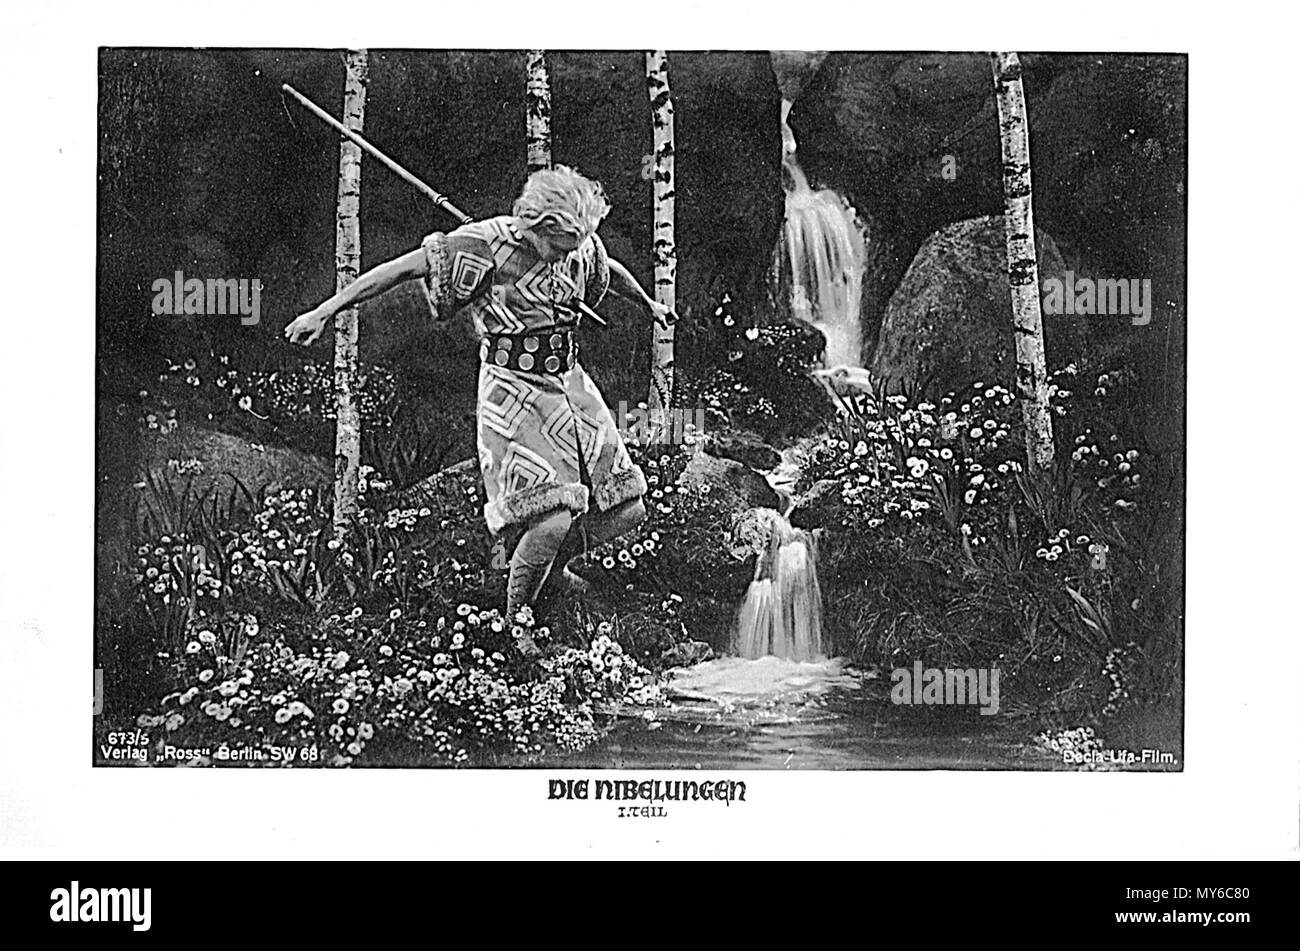 . Décès Siegfrieds.jpg . vers 1924. producteur Fritz Lang.Siegfried par Paul Richter. Restauration par Vitold Mouratov Siegfrieds 487 décès Banque D'Images